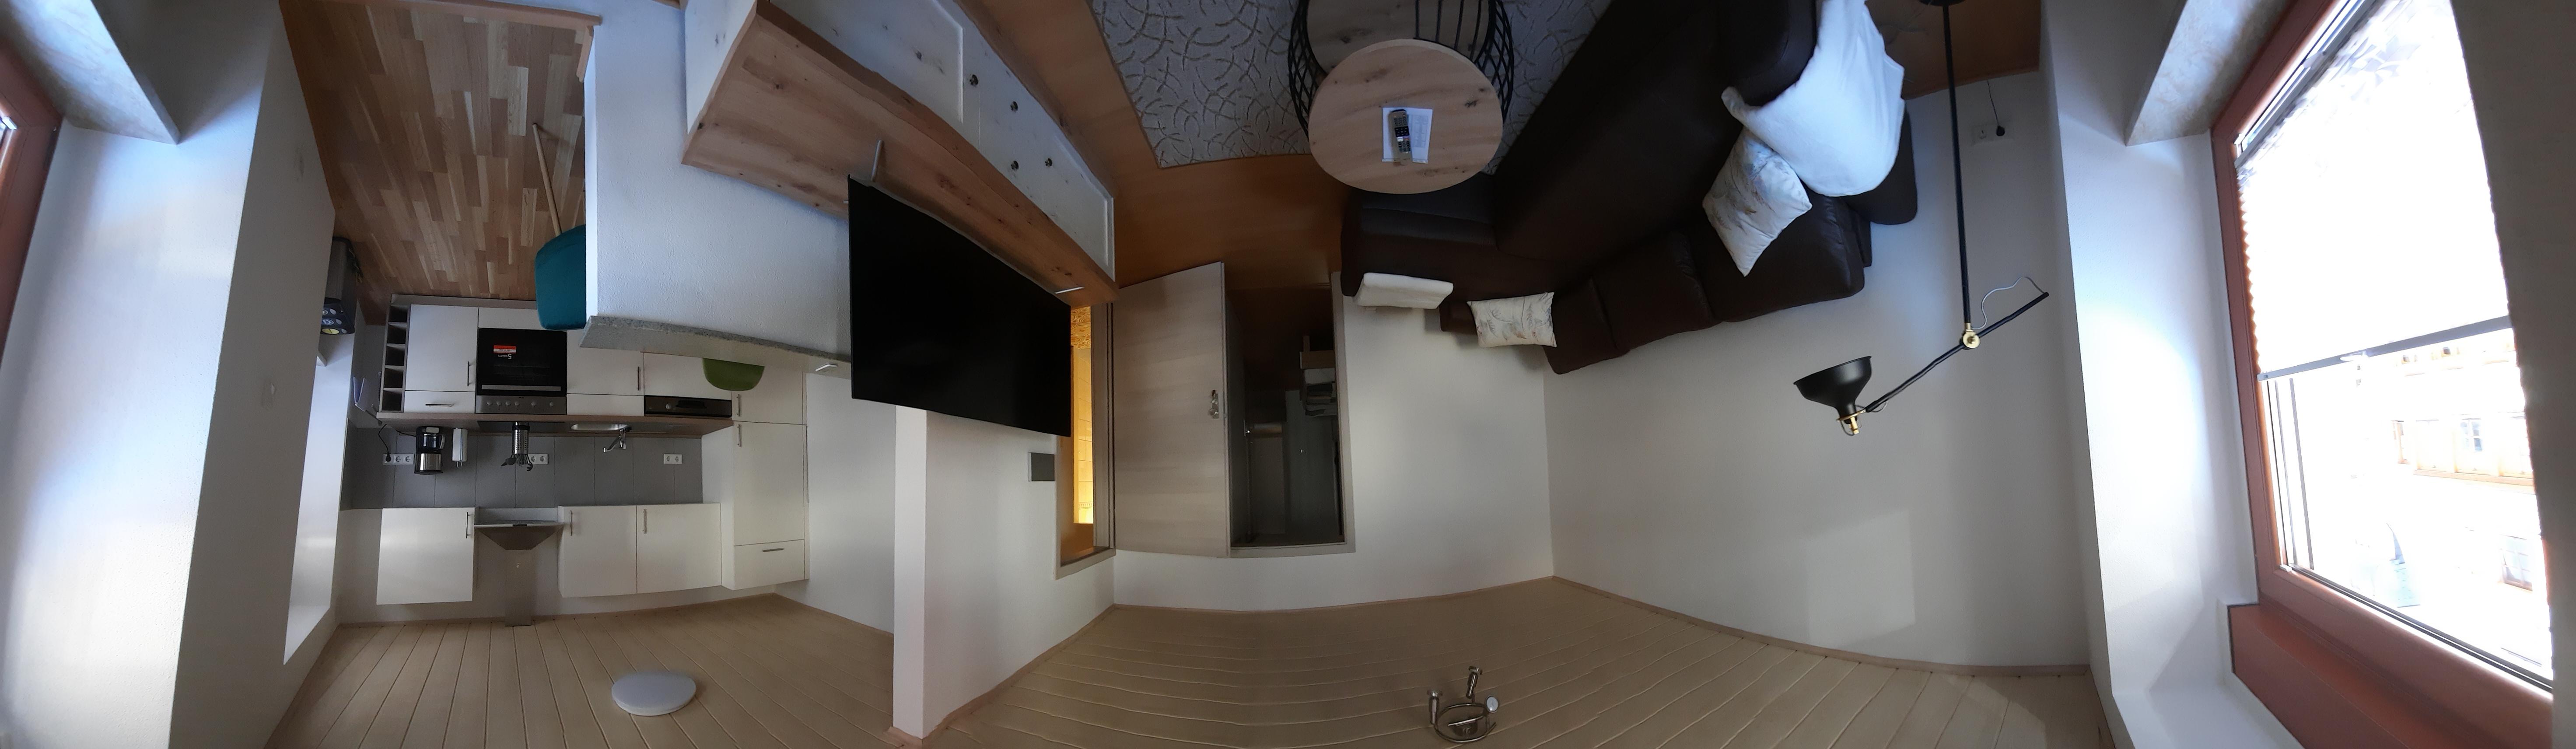 360 Grad Ansicht Wohnzimmer & Küche